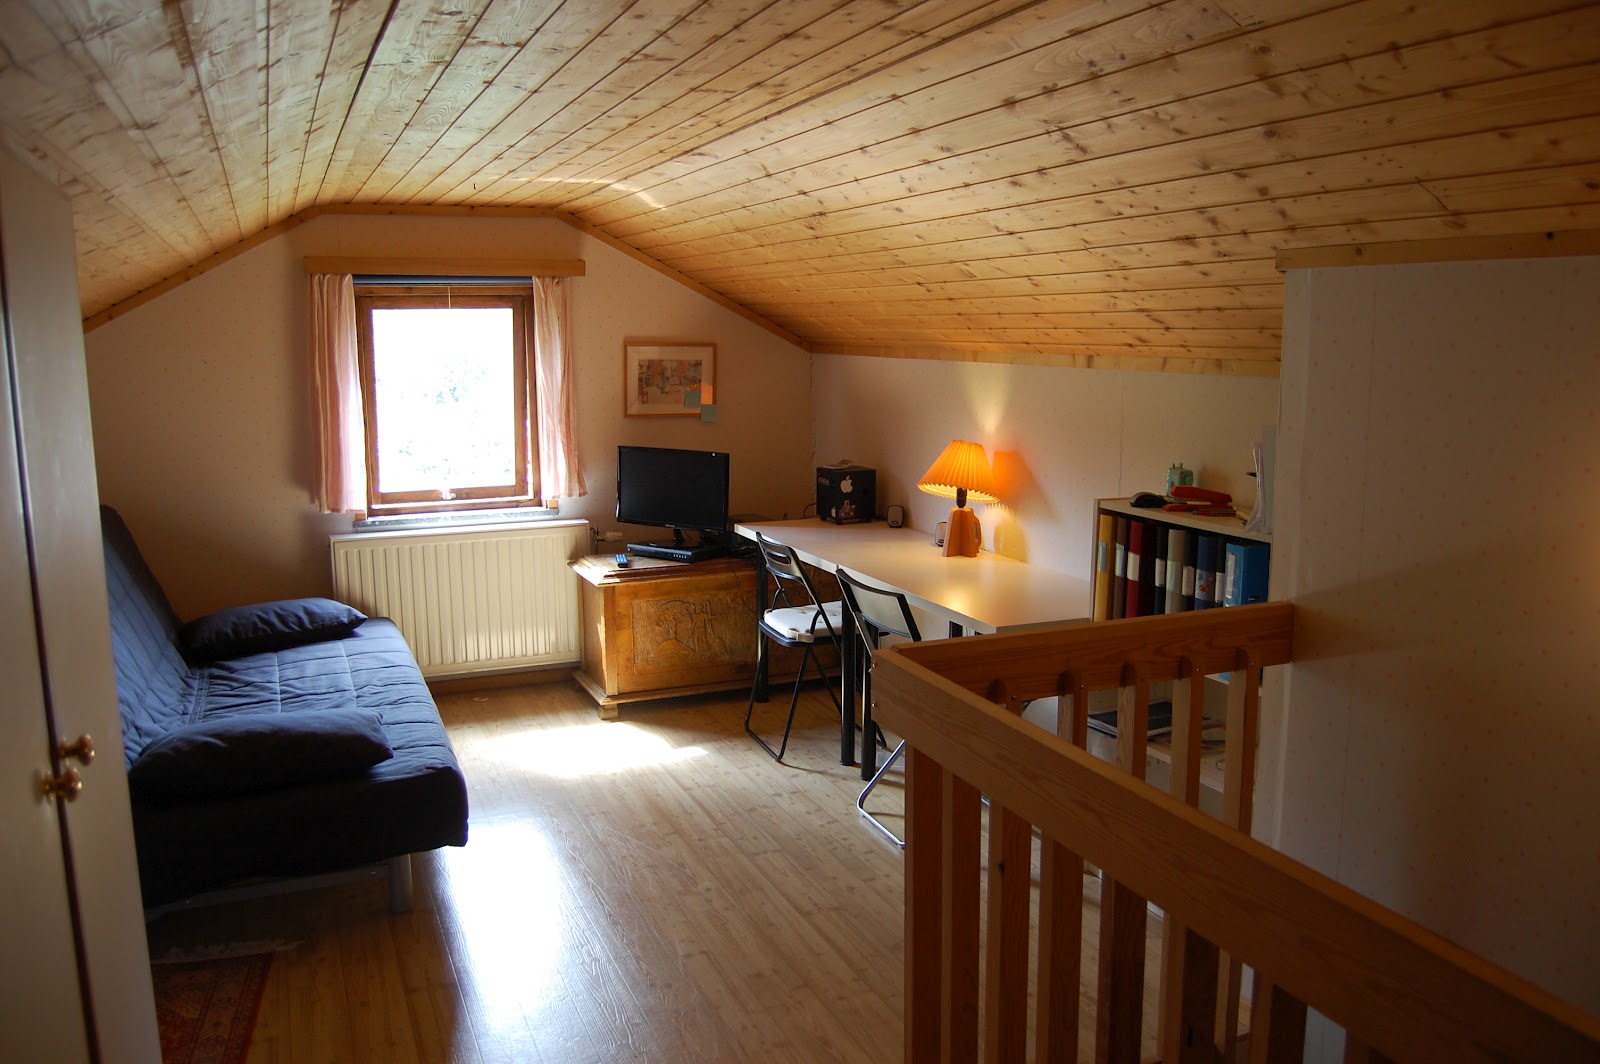 Small cozy Finished attic | Attic remodel, Attic ...